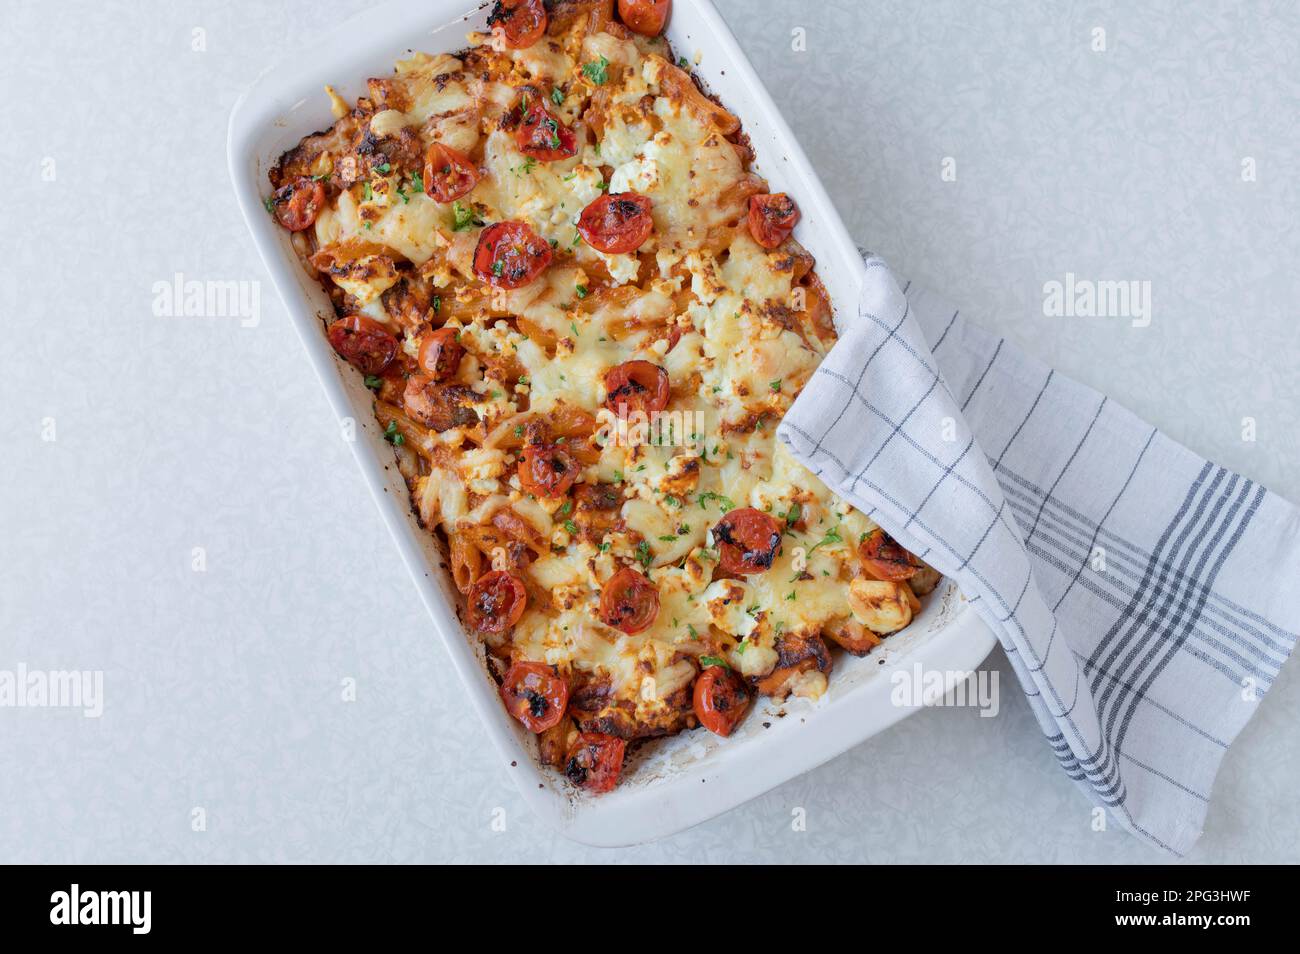 Fischauflauf mit Lachs, Pasta, Tomaten, Sahne und Käse in einem weißen Auflauf, isoliert auf weißem Hintergrund Stockfoto